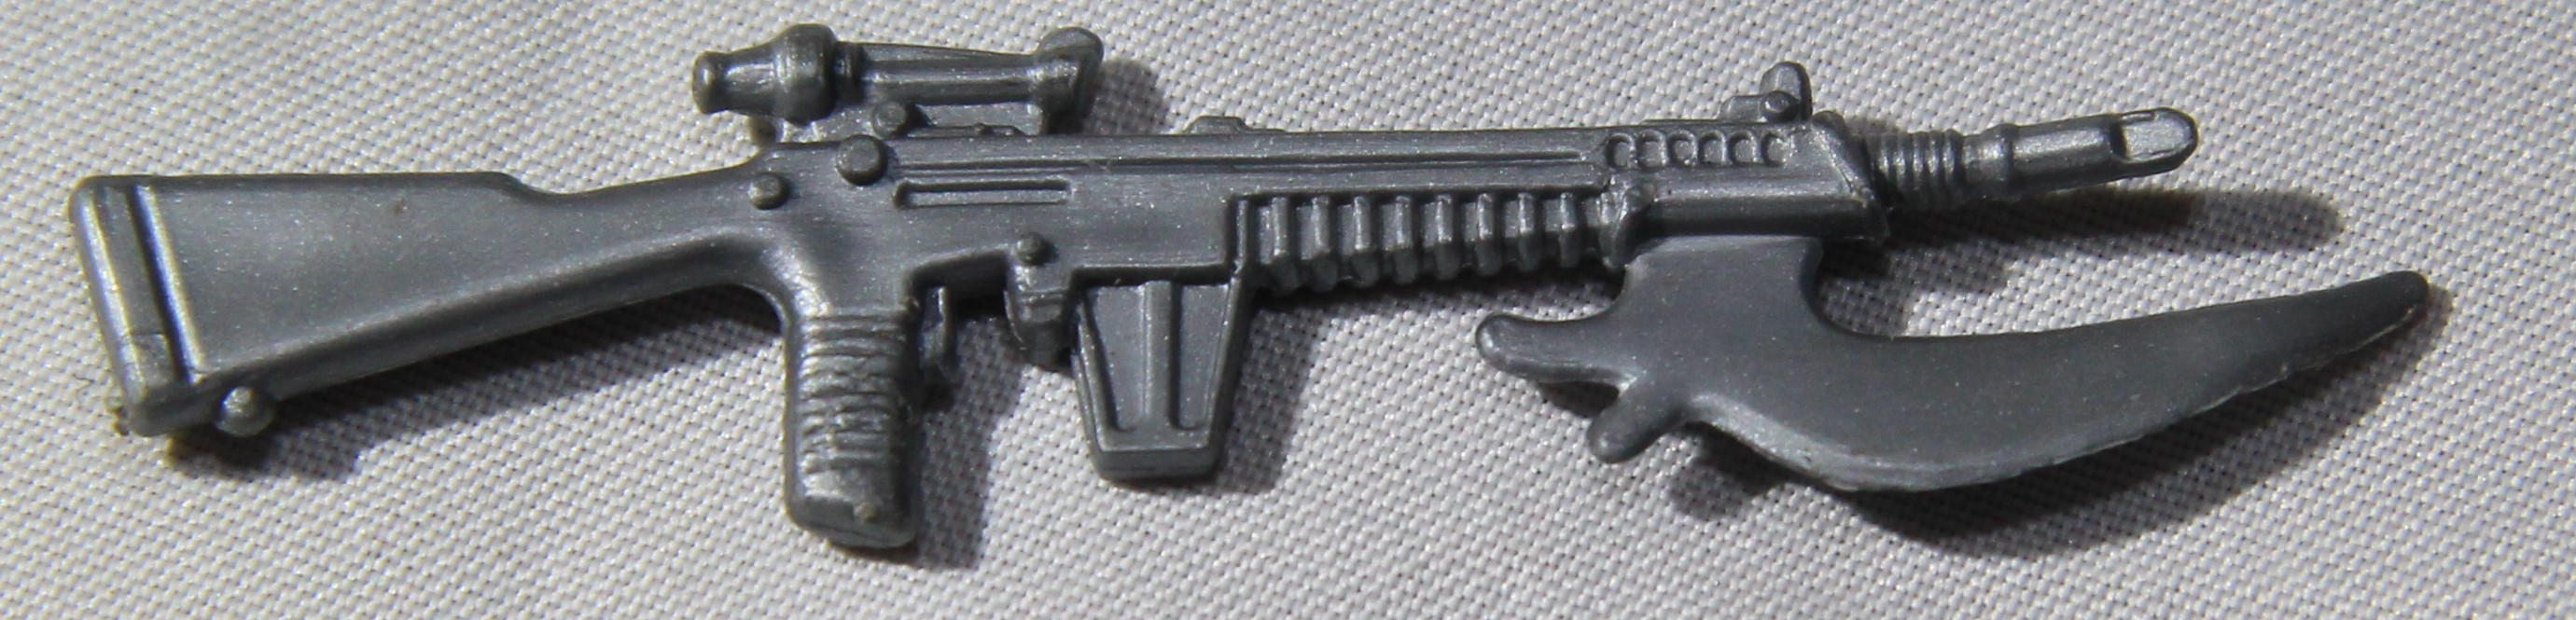 1985 Ripper Gun